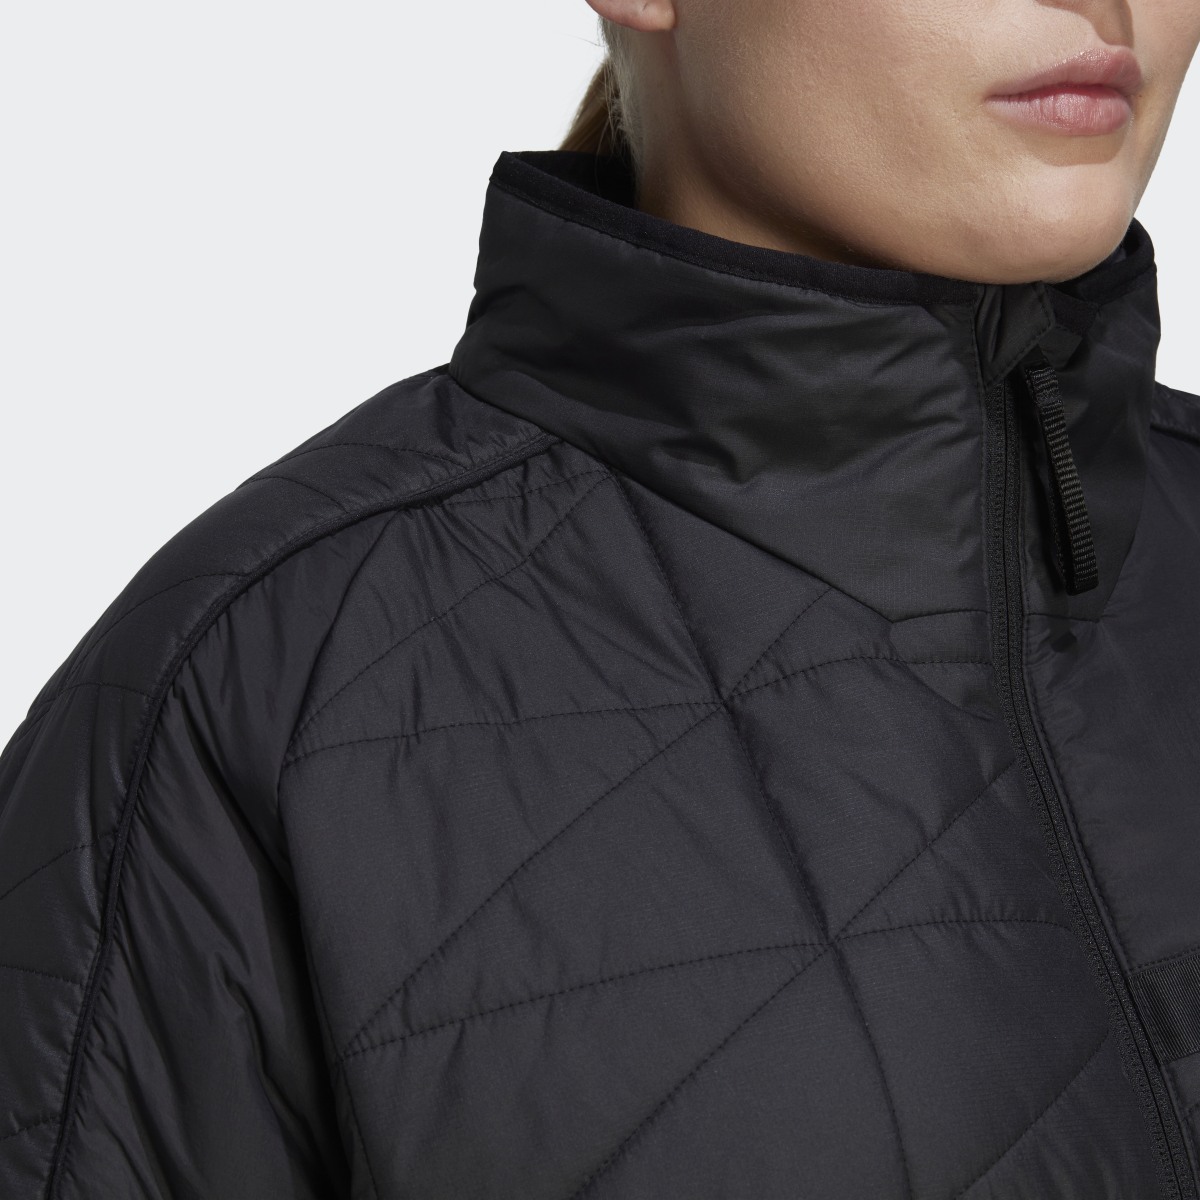 Adidas TERREX Multi Insulated Jacke – Große Größen. 8